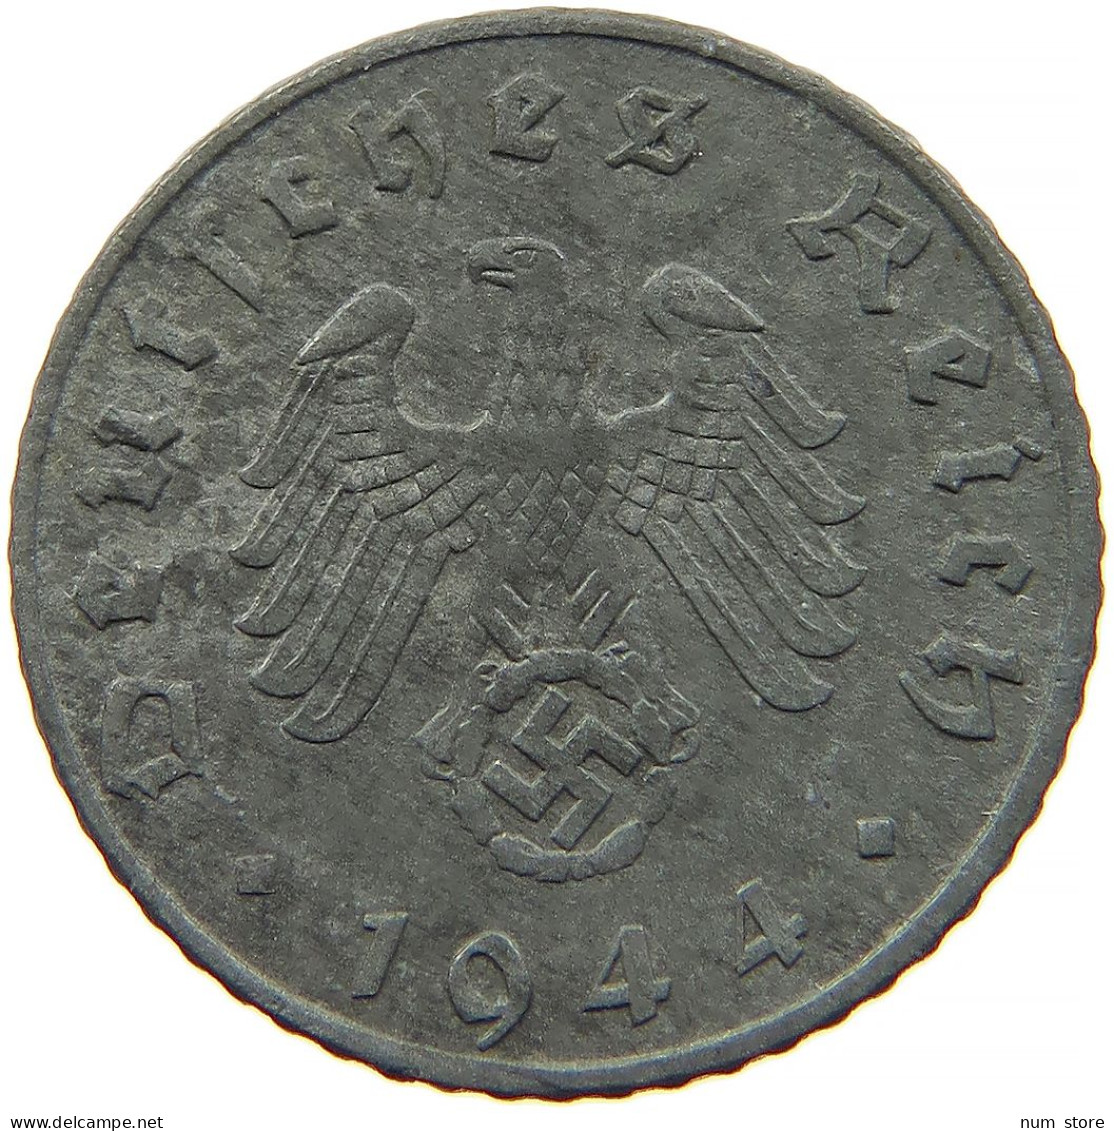 GERMANY 5 REICHSPFENNIG 1944 F #s091 0893 - 5 Reichspfennig